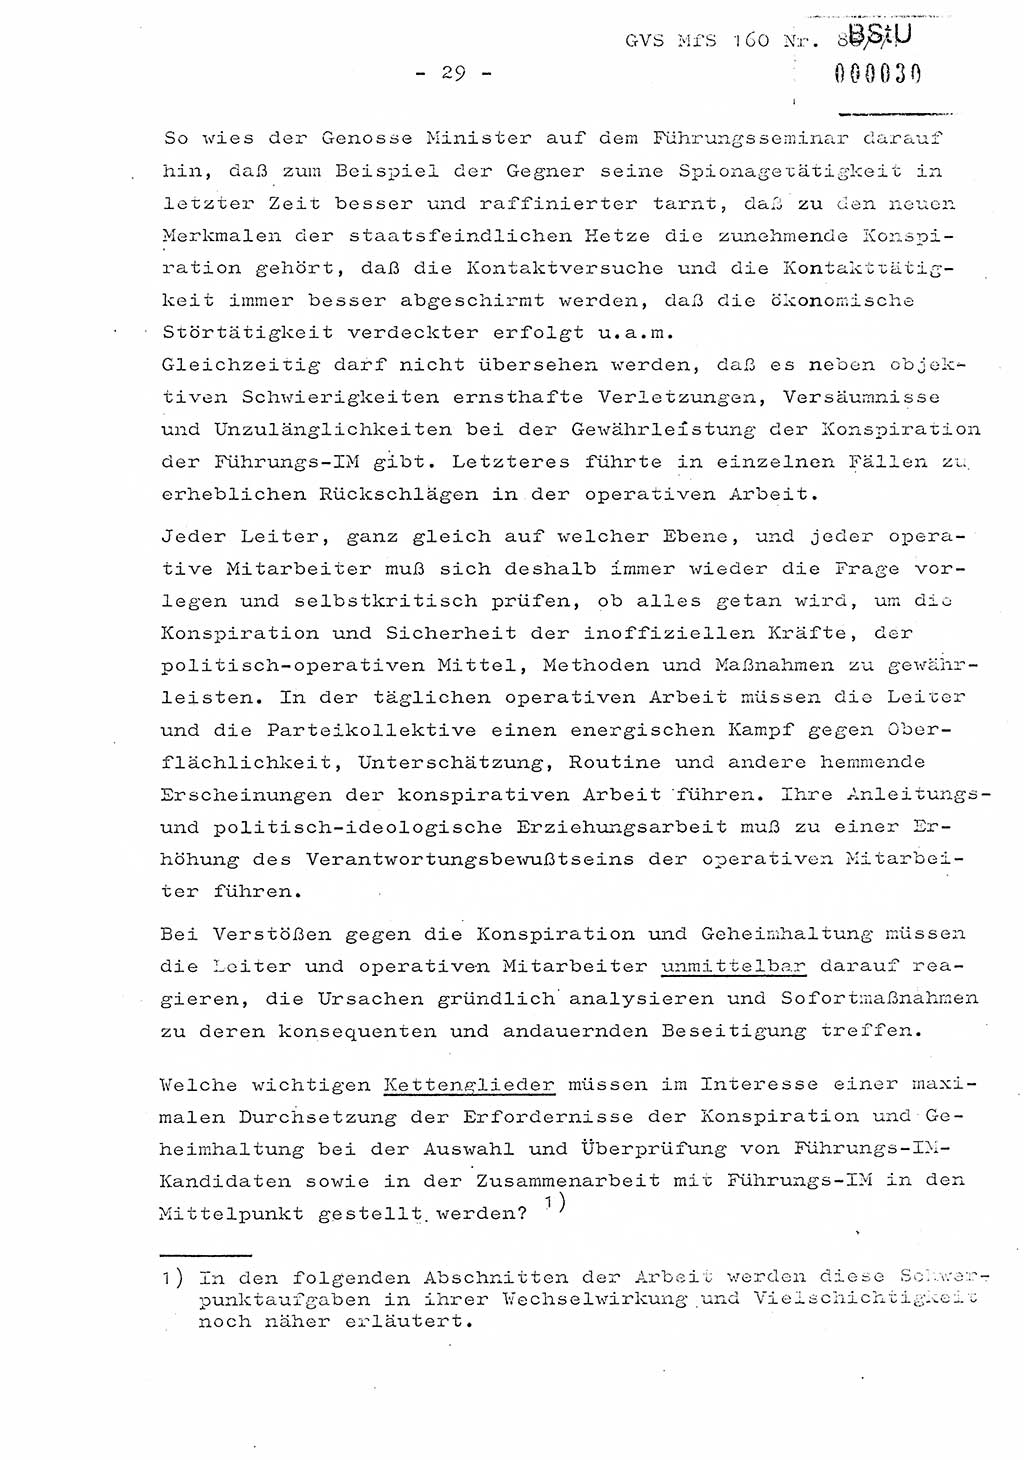 Dissertation Oberstleutnant Josef Schwarz (BV Schwerin), Major Fritz Amm (JHS), Hauptmann Peter Gräßler (JHS), Ministerium für Staatssicherheit (MfS) [Deutsche Demokratische Republik (DDR)], Juristische Hochschule (JHS), Geheime Verschlußsache (GVS) 160-88/71, Potsdam 1972, Seite 29 (Diss. MfS DDR JHS GVS 160-88/71 1972, S. 29)